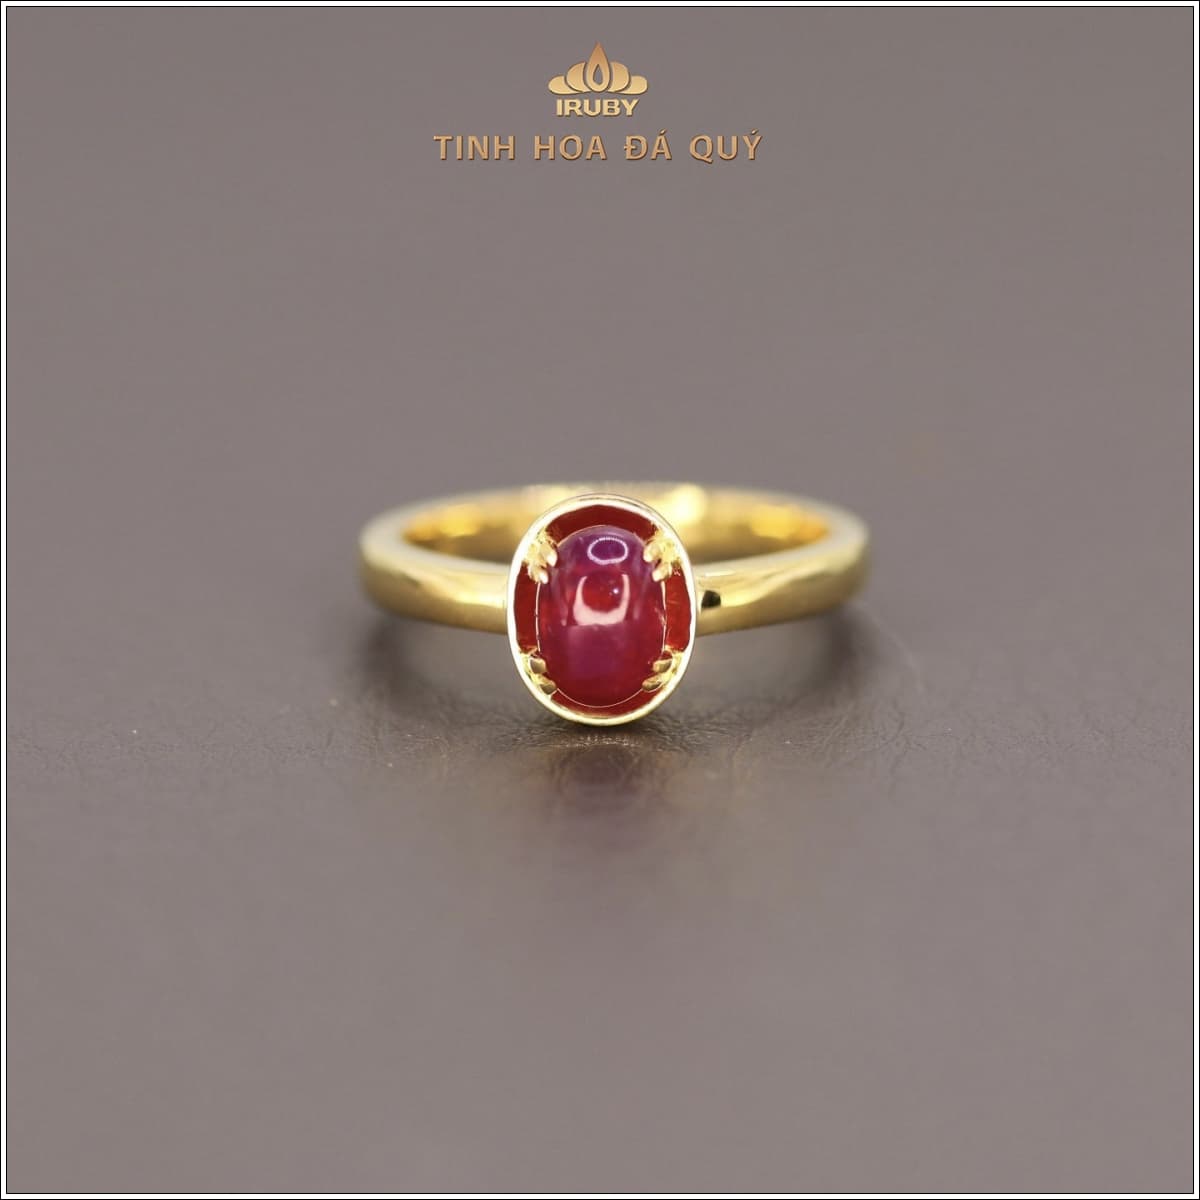 Nhẫn nữ Ruby Vintage - IRRC 2312155 viên đá chủ của thiết kế mẫu nhẫn nữ Vintage